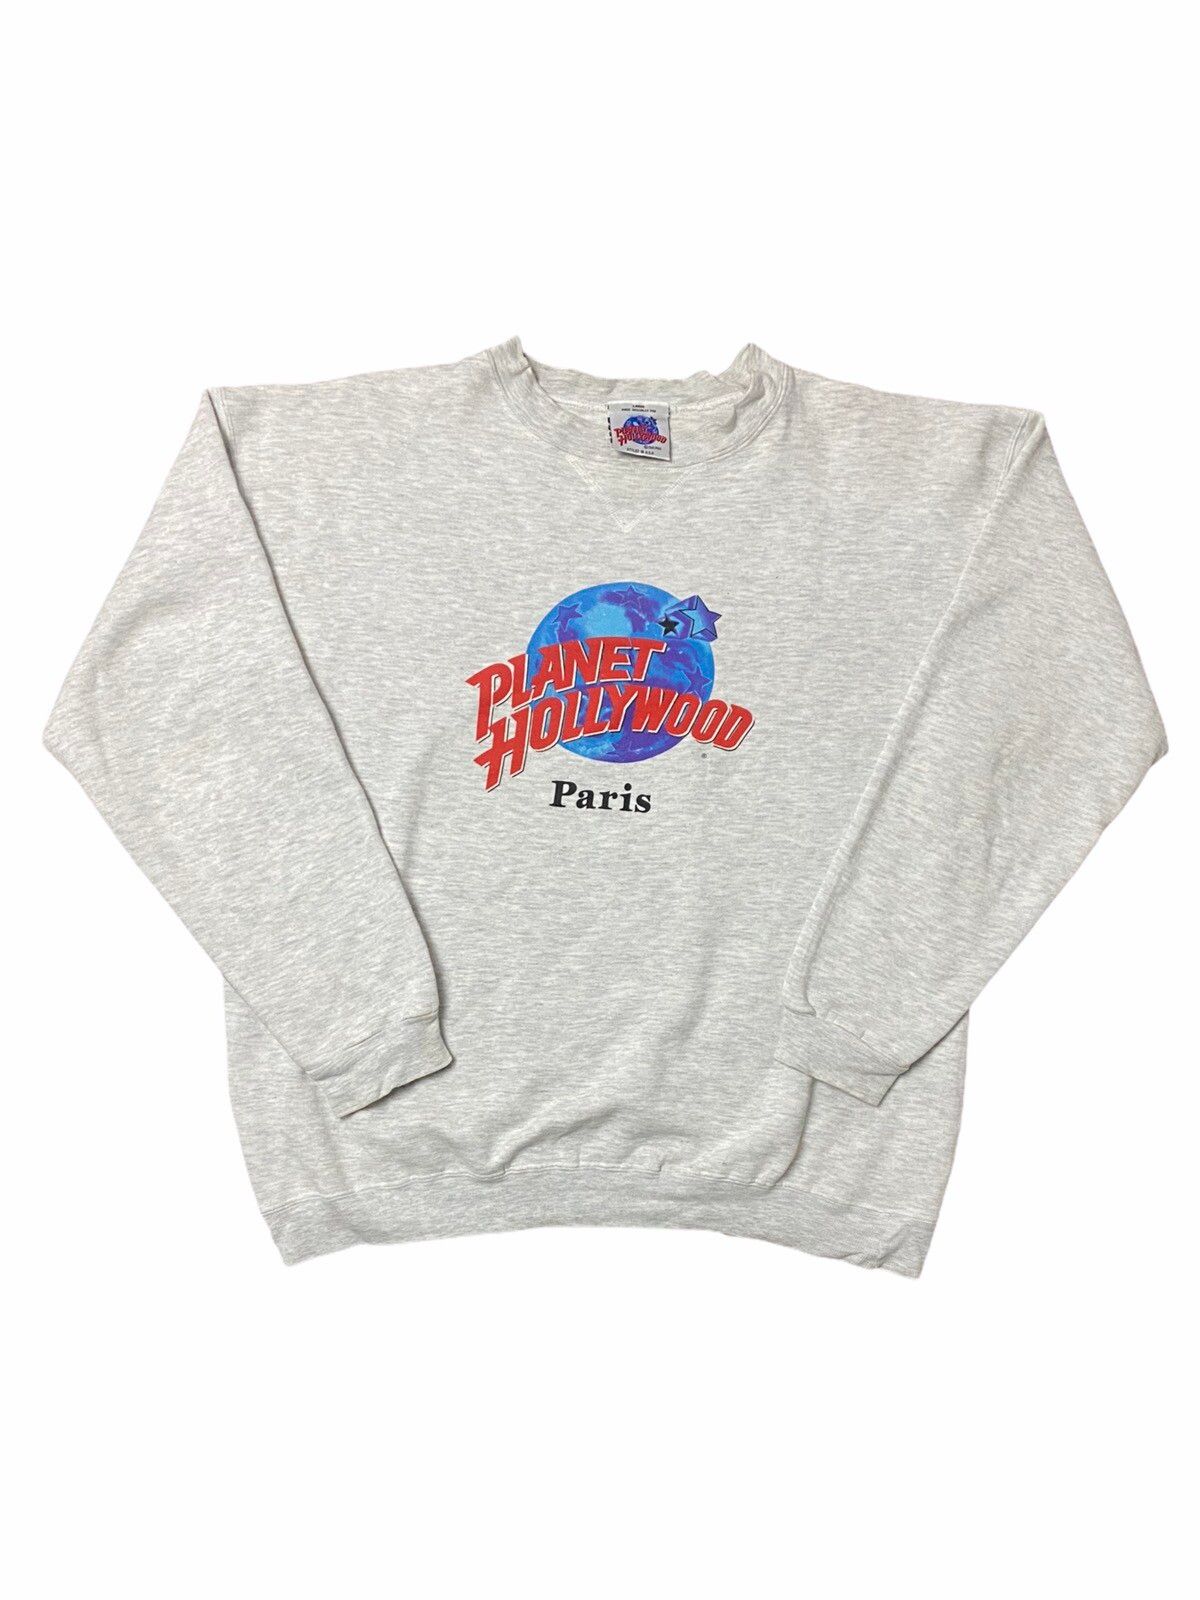 Vintage Paris Sweatshirt Size US L / EU 52-54 / 3 - 1 Preview